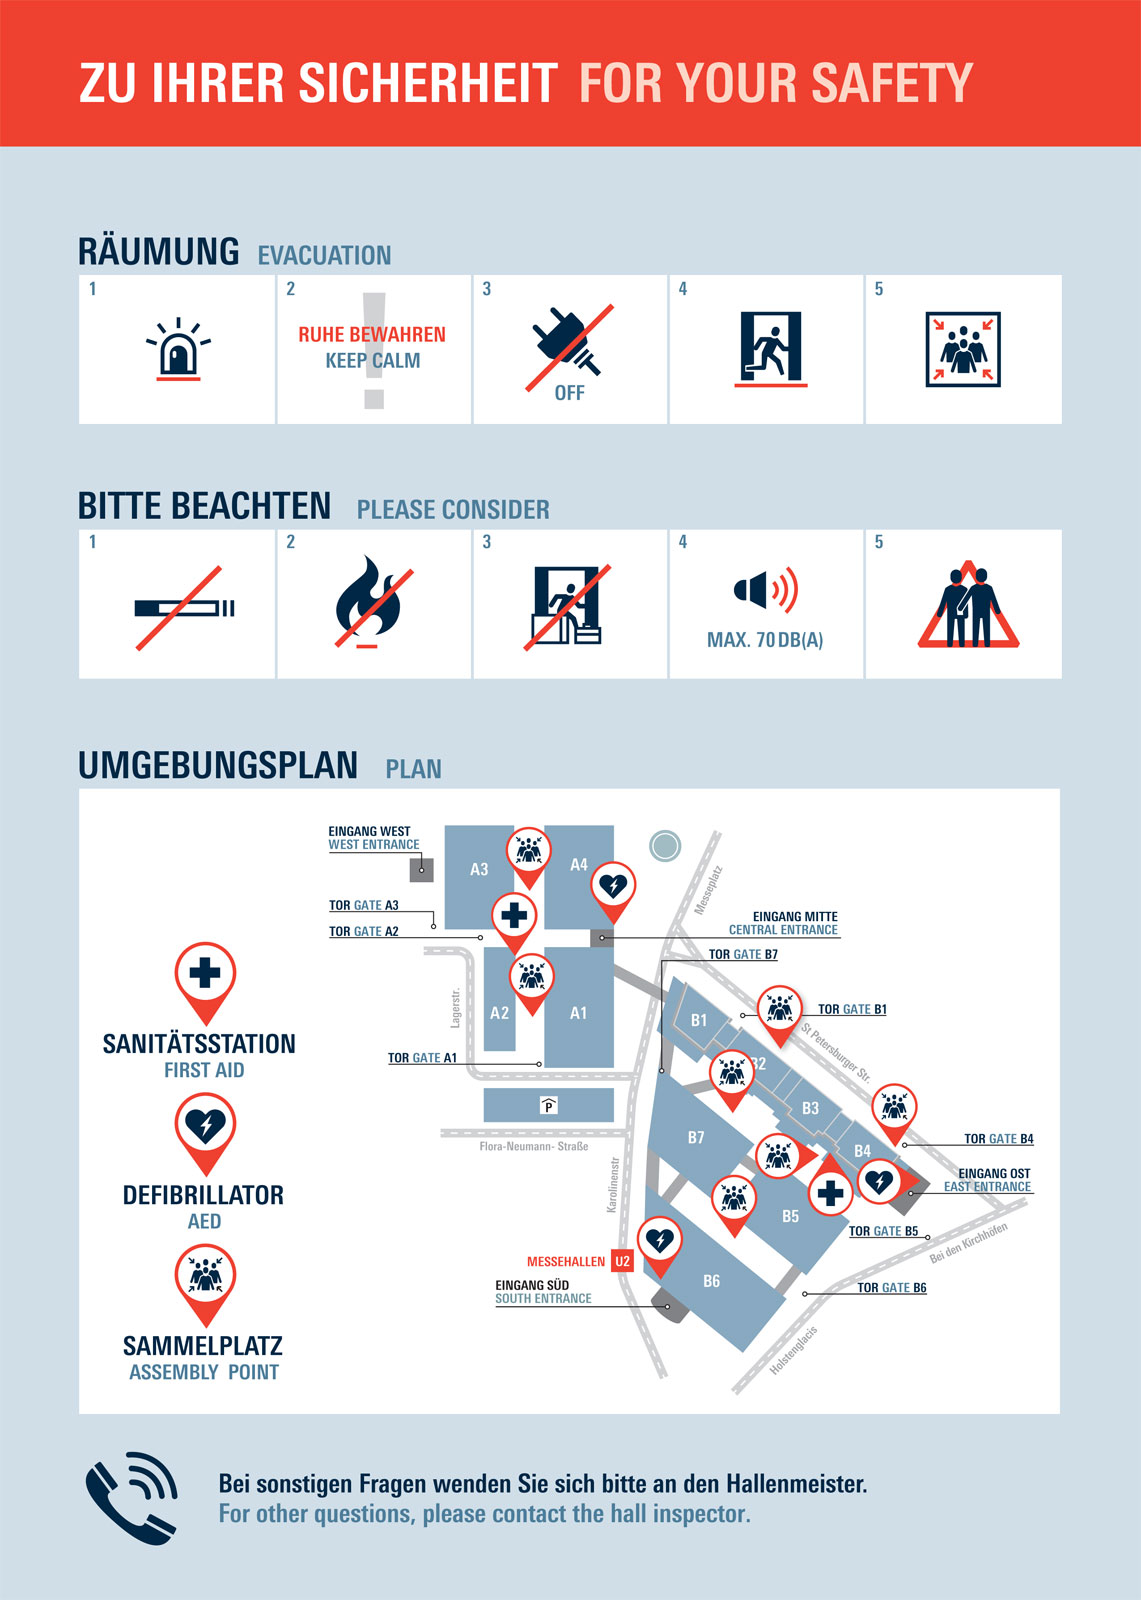 Sicherheitshinweise der Hamburg Messe zur Räumung/Evakuierung